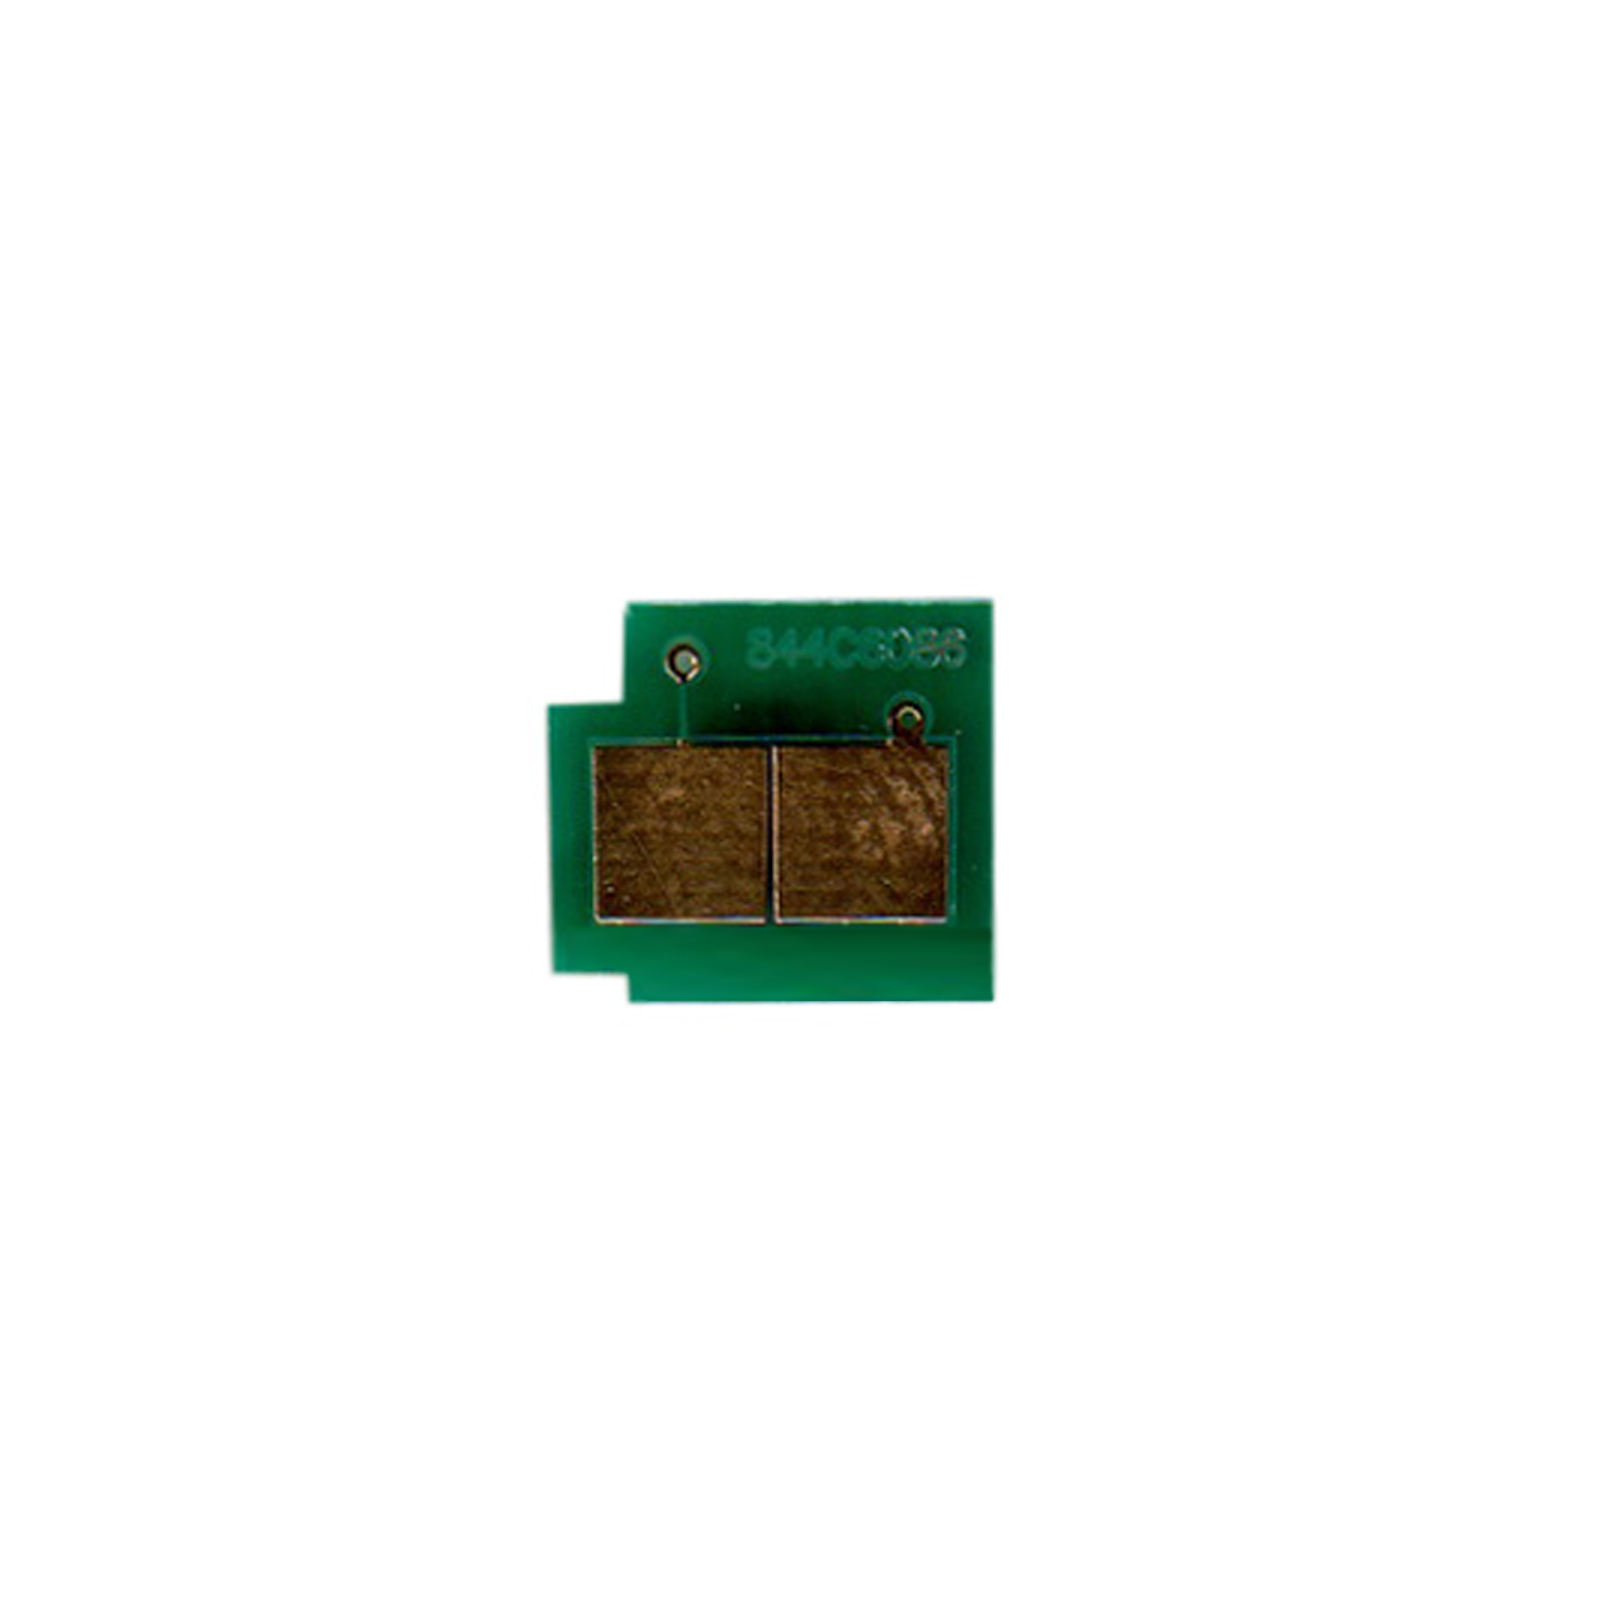 Чип для картриджа HP CLJ CP3505/3800 Yellow BASF (WWMID-70961)